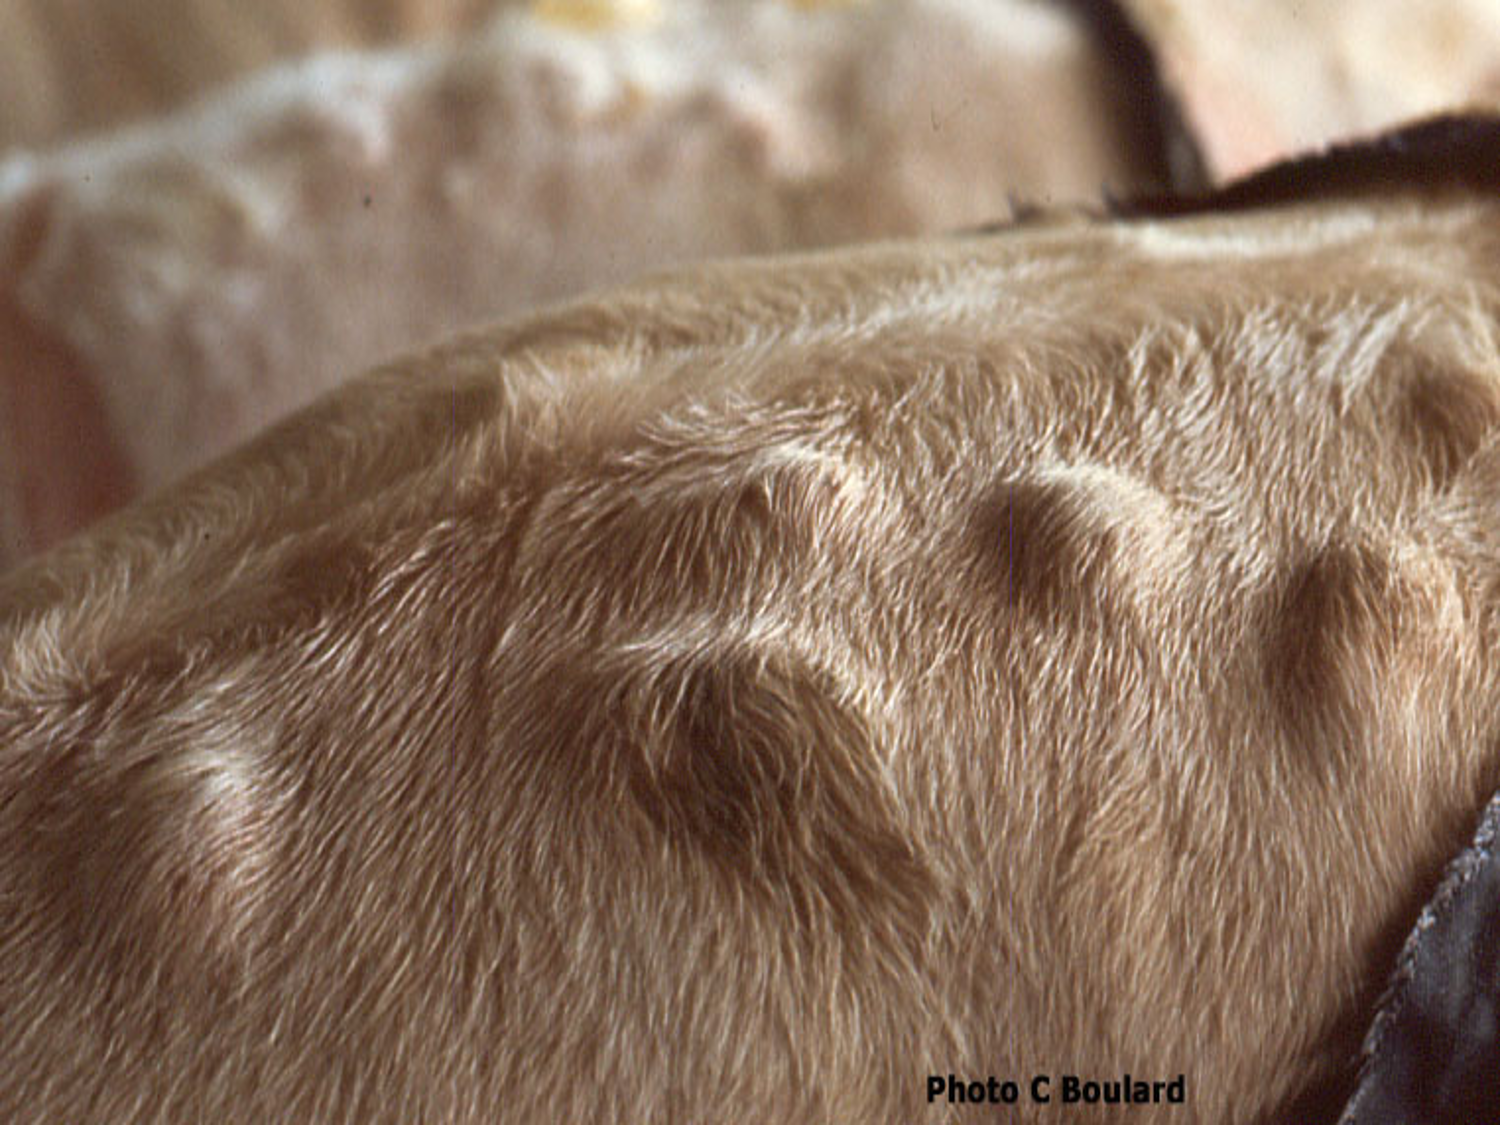 Photo Chantal Boulard Inrae. Abcès sur le dos d'une vache, causés par les larves de varron migrant dans le tissu sous-cutané dorsal.